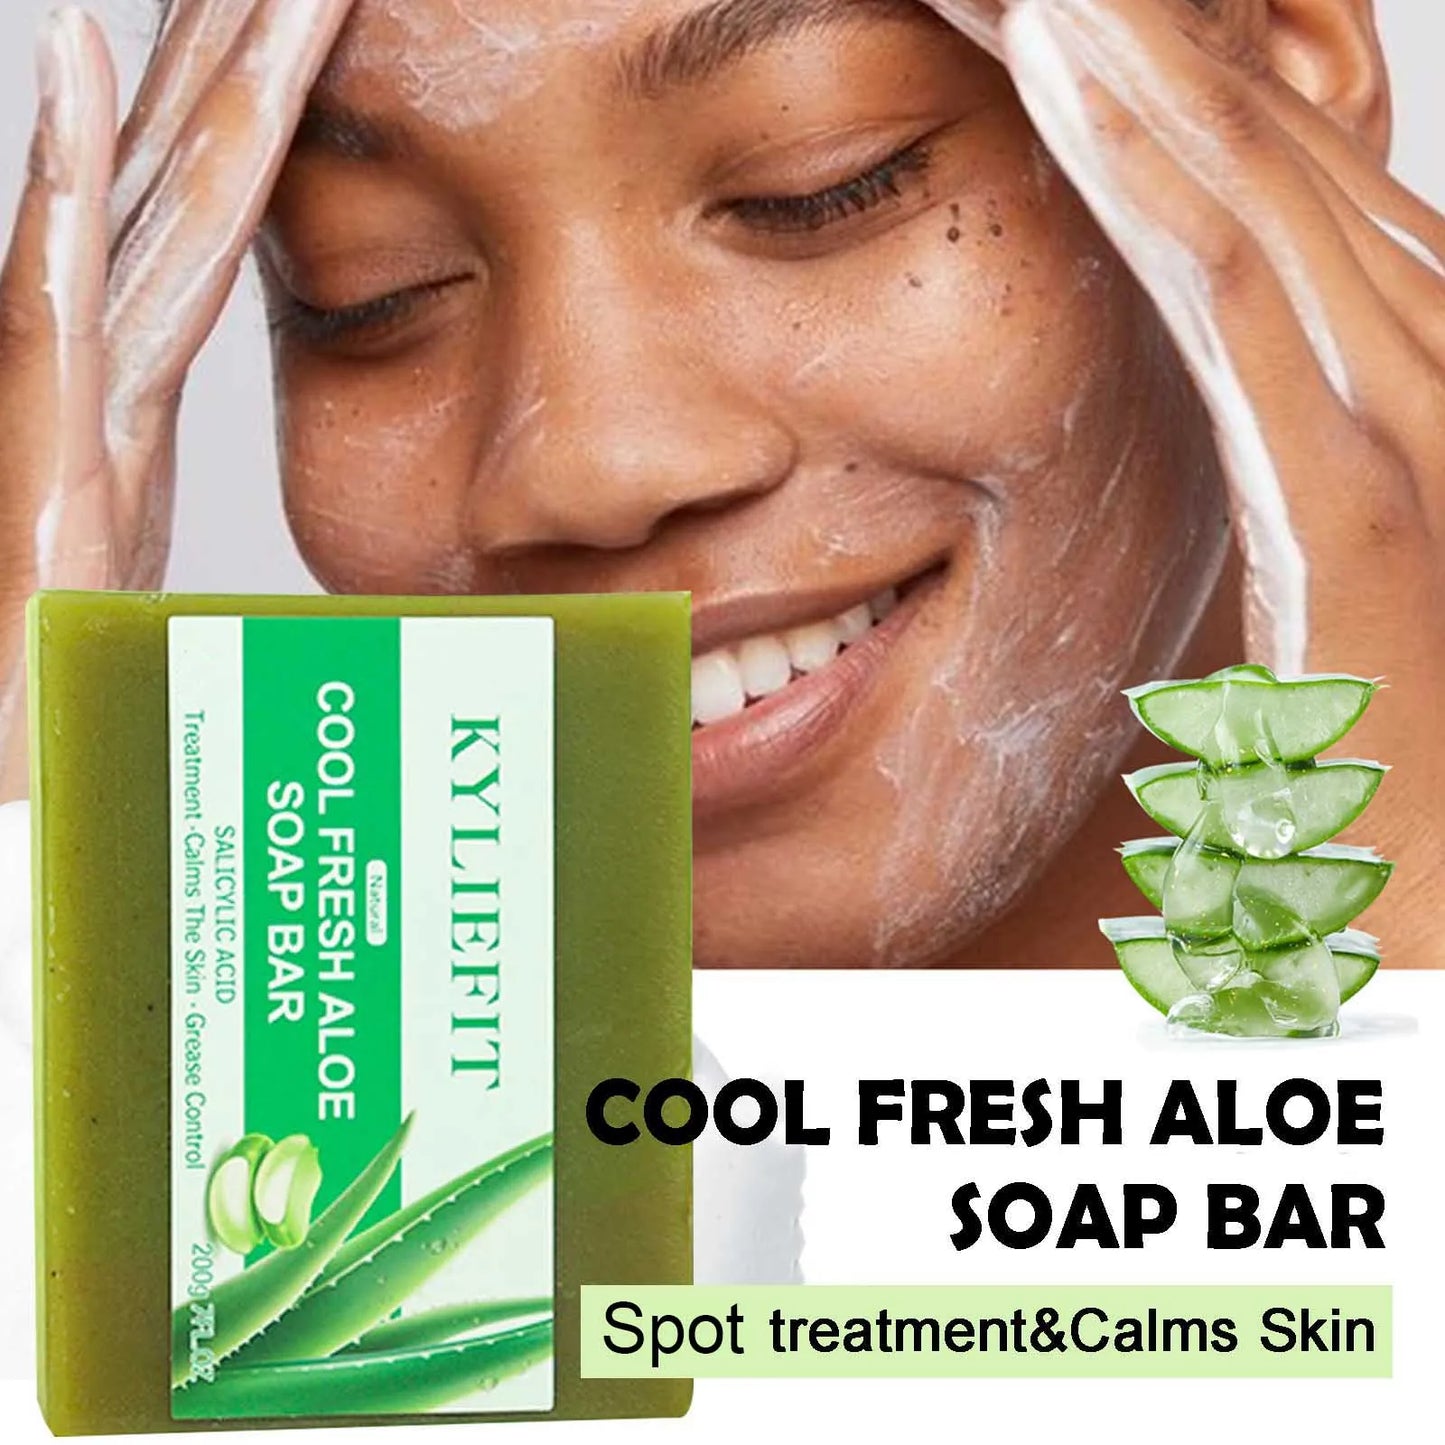 Cool Fresh Aloe Soap Bar